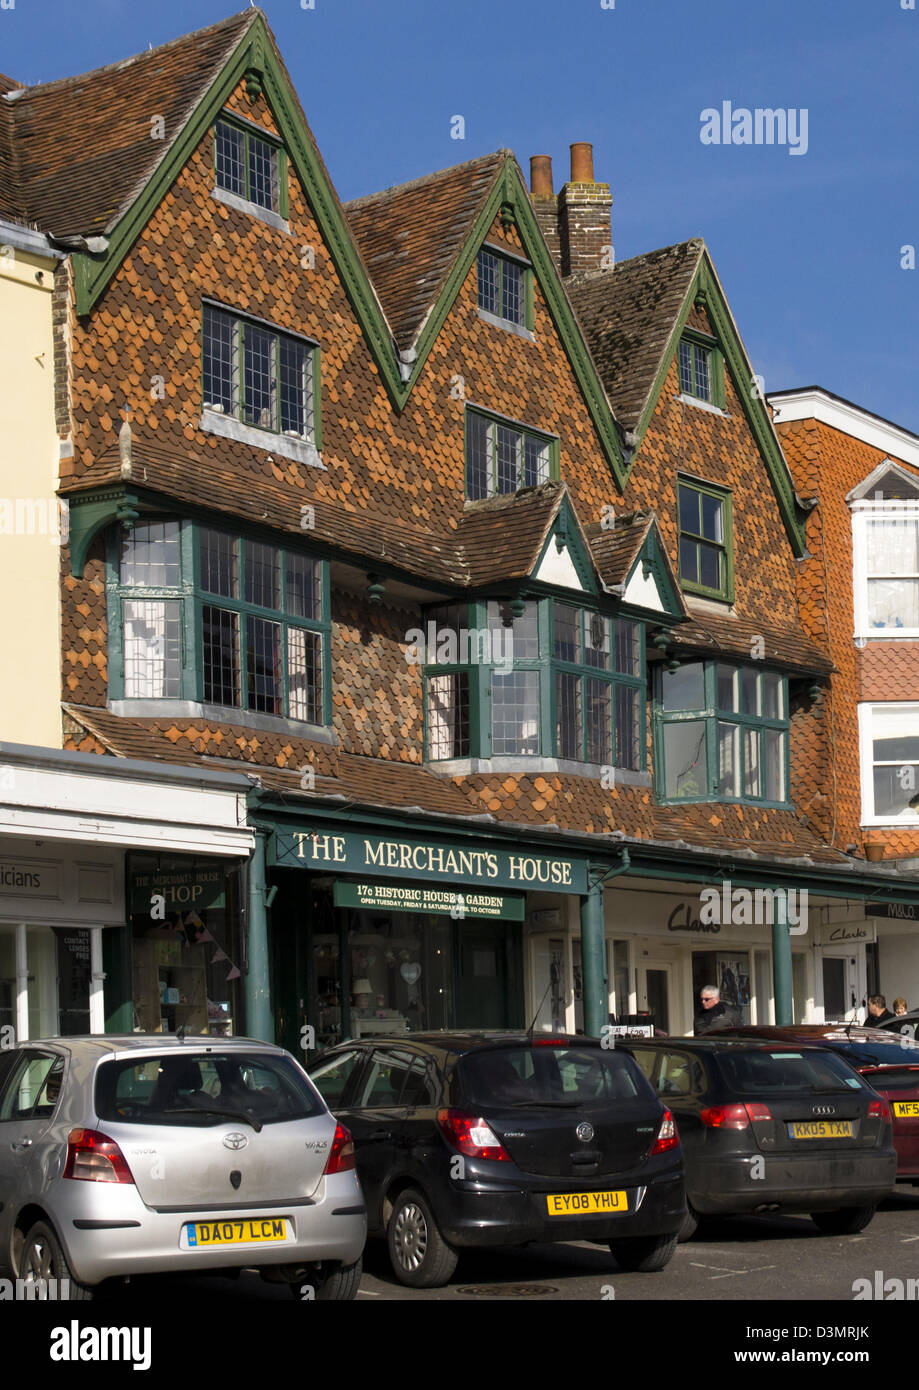 Marlborough est une petite ville de marché dans la campagne du Wiltshire, Angleterre, Royaume-Uni. Banque D'Images